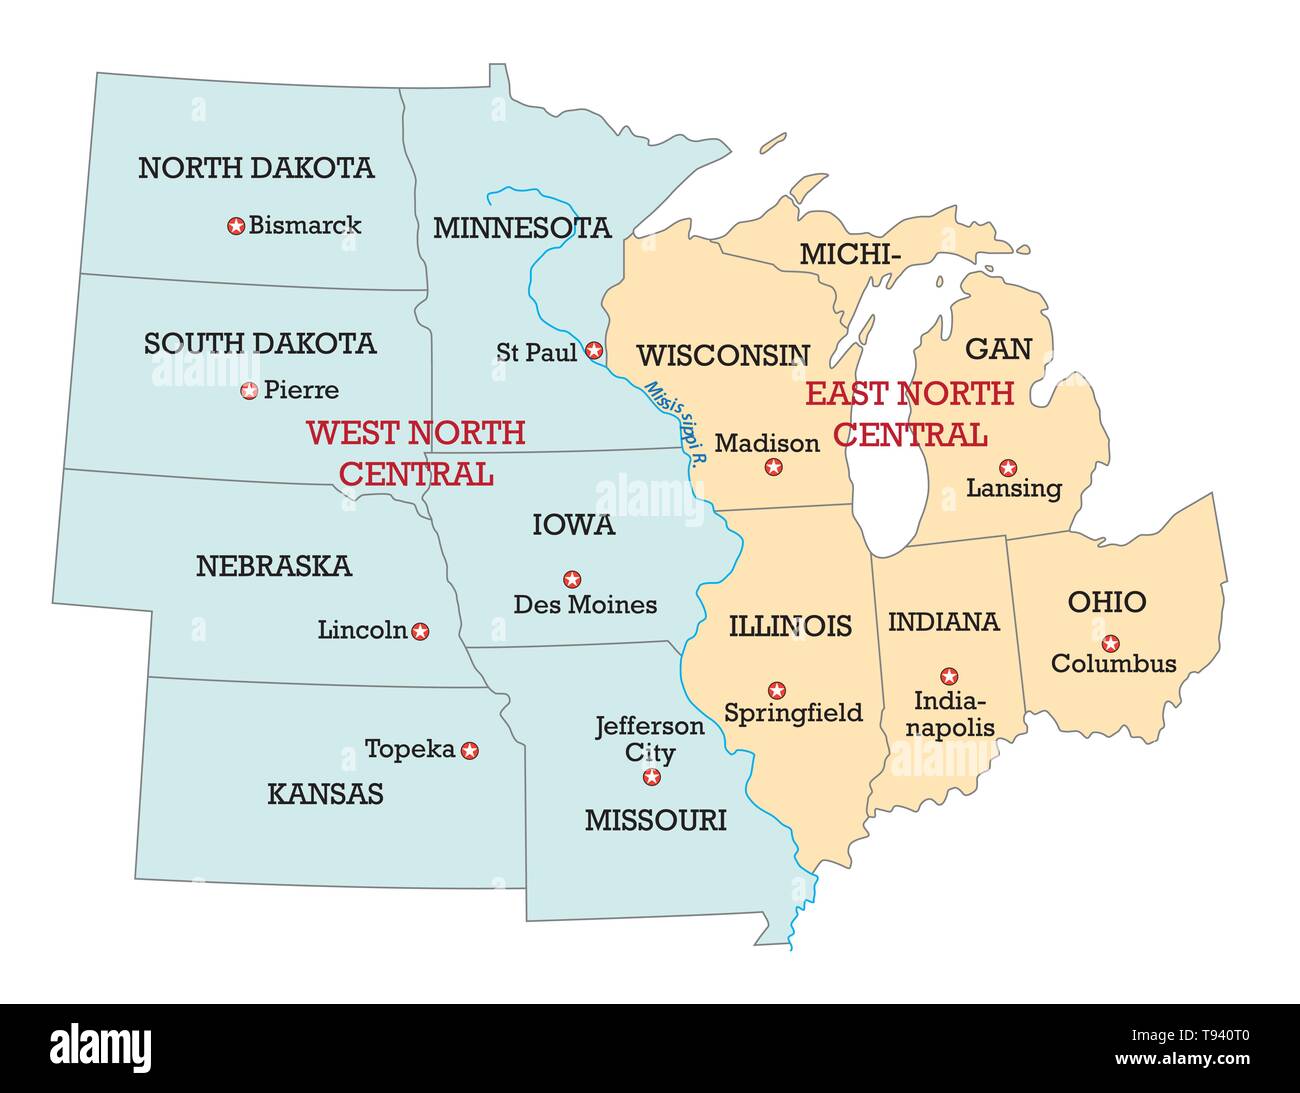 Carte de la Midwest des États-Unis d'Amérique Illustration de Vecteur